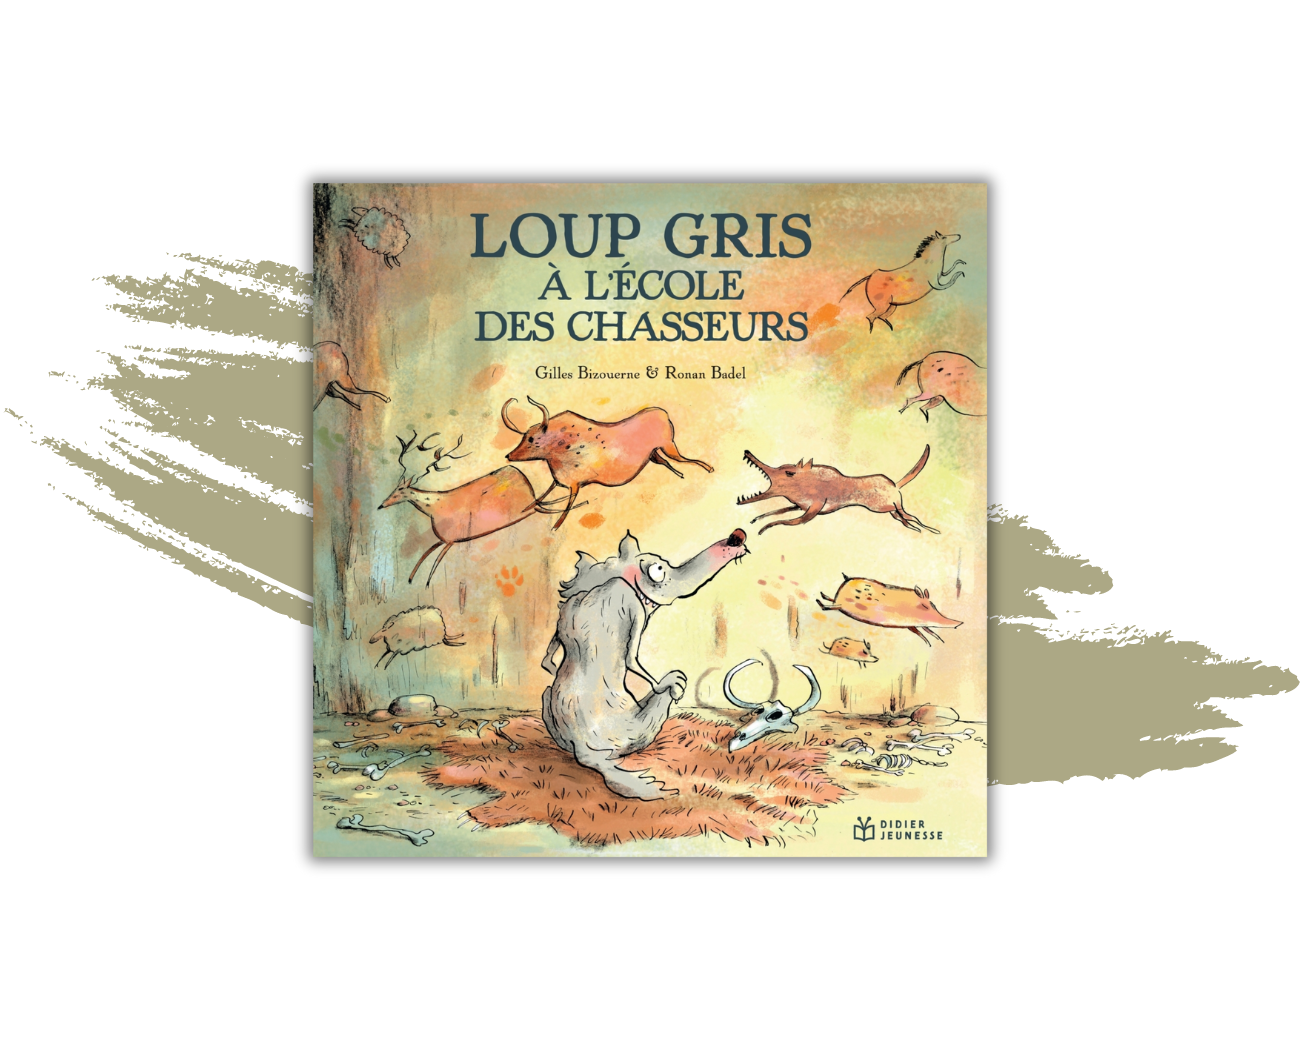 Le livre "Loup gris à l'école des chasseurs" de Gilles Bizouernes